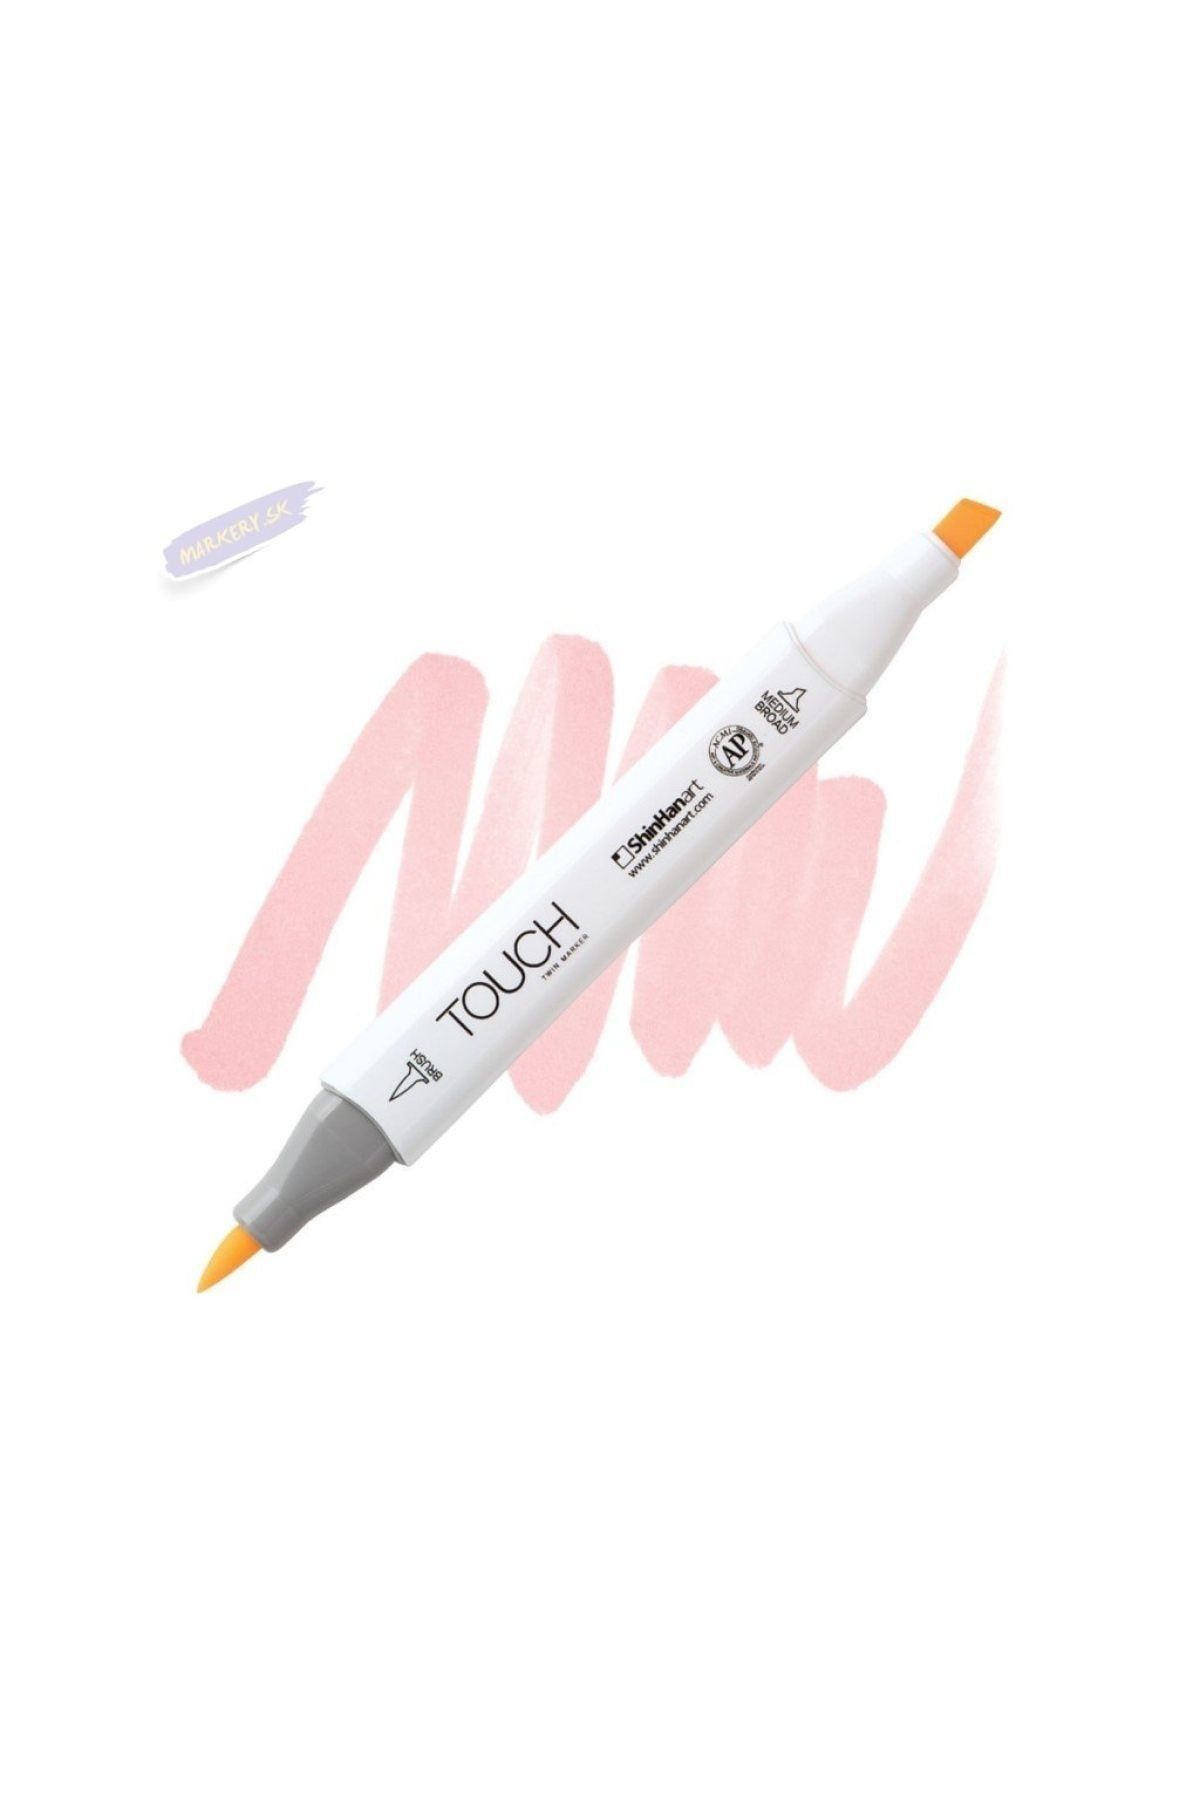 Shinhan Art Touch Twın Brush Pen : Çift Taraflı Marker : R28 Fruit Pink